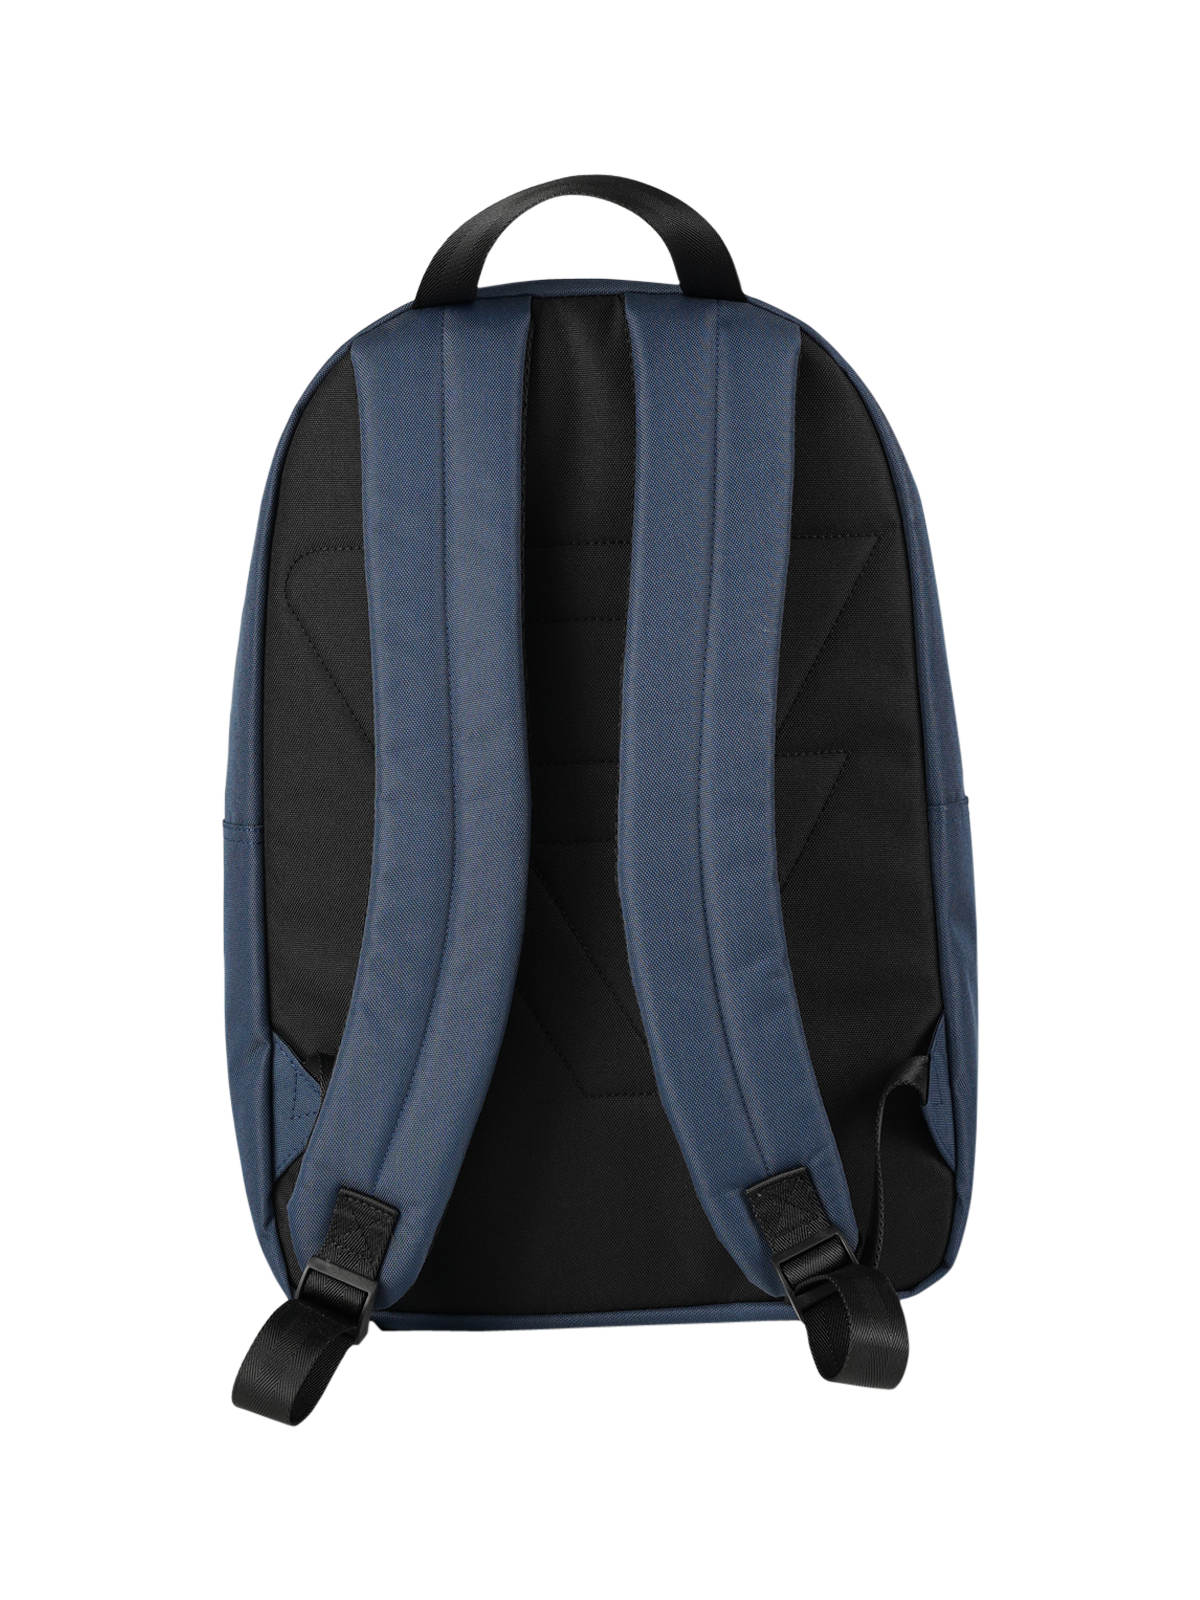 Makalu Backpack | Blau